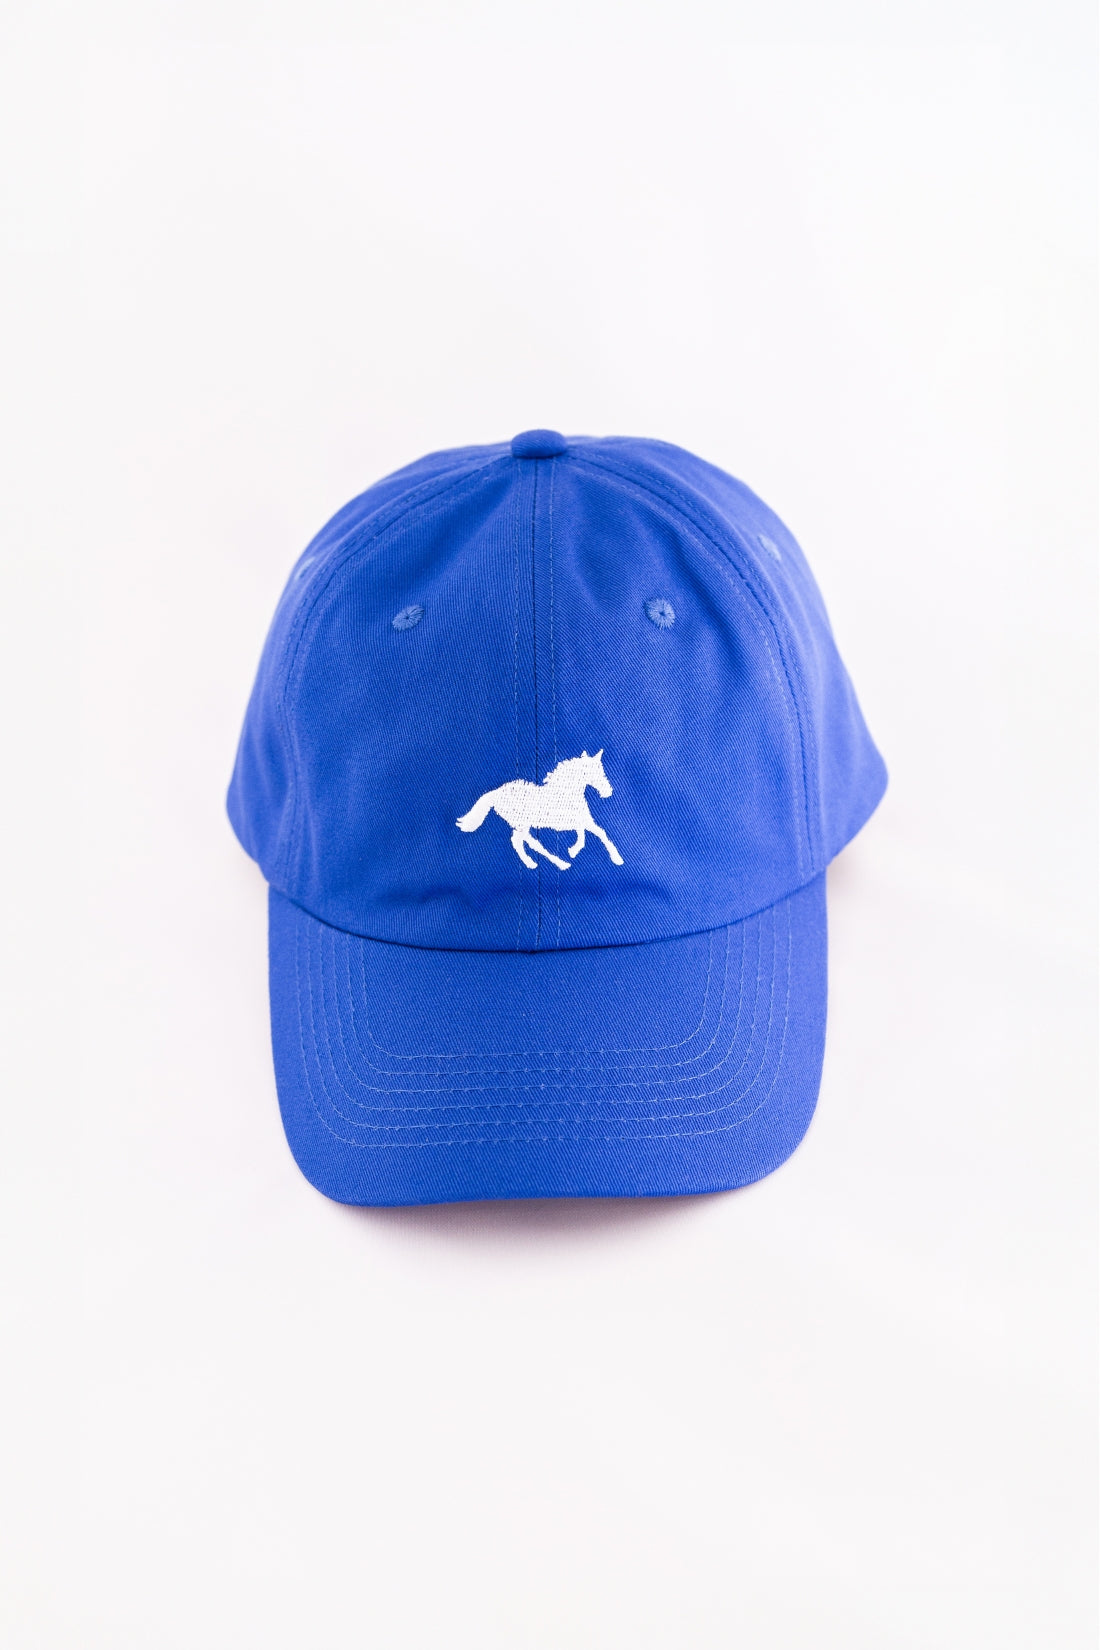 Horse Girl Cap | Blue/White